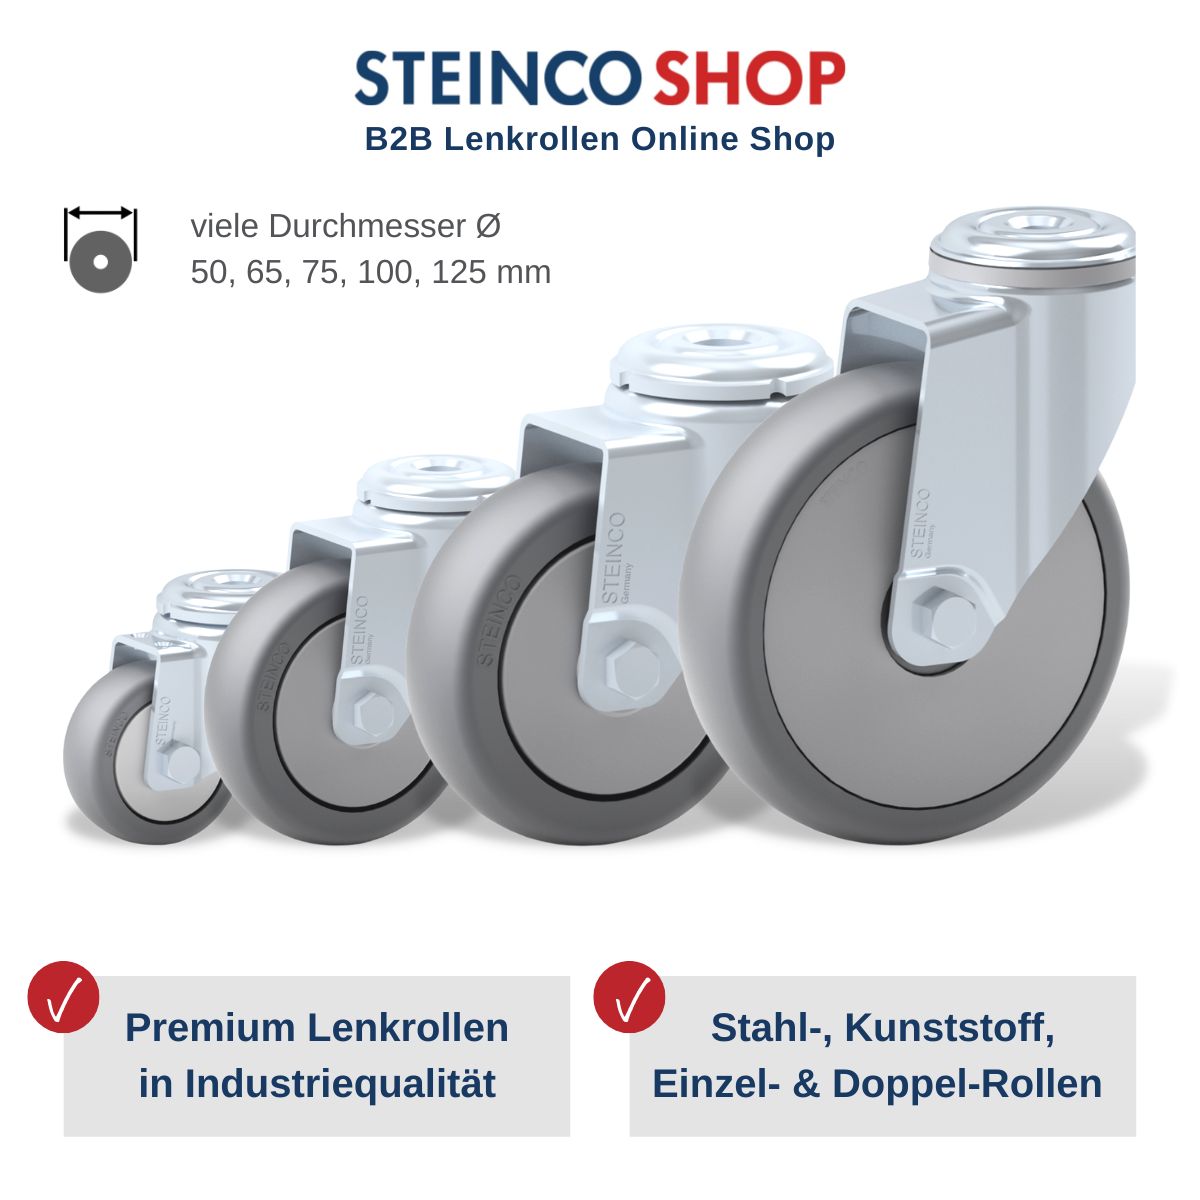 STEINCO SHOP Rollen mit vielen Durchmessern von 50 bis 125 mm, Premium Lenkrollen in Industriequalität als Stahlrollen und Kunststoffrollen